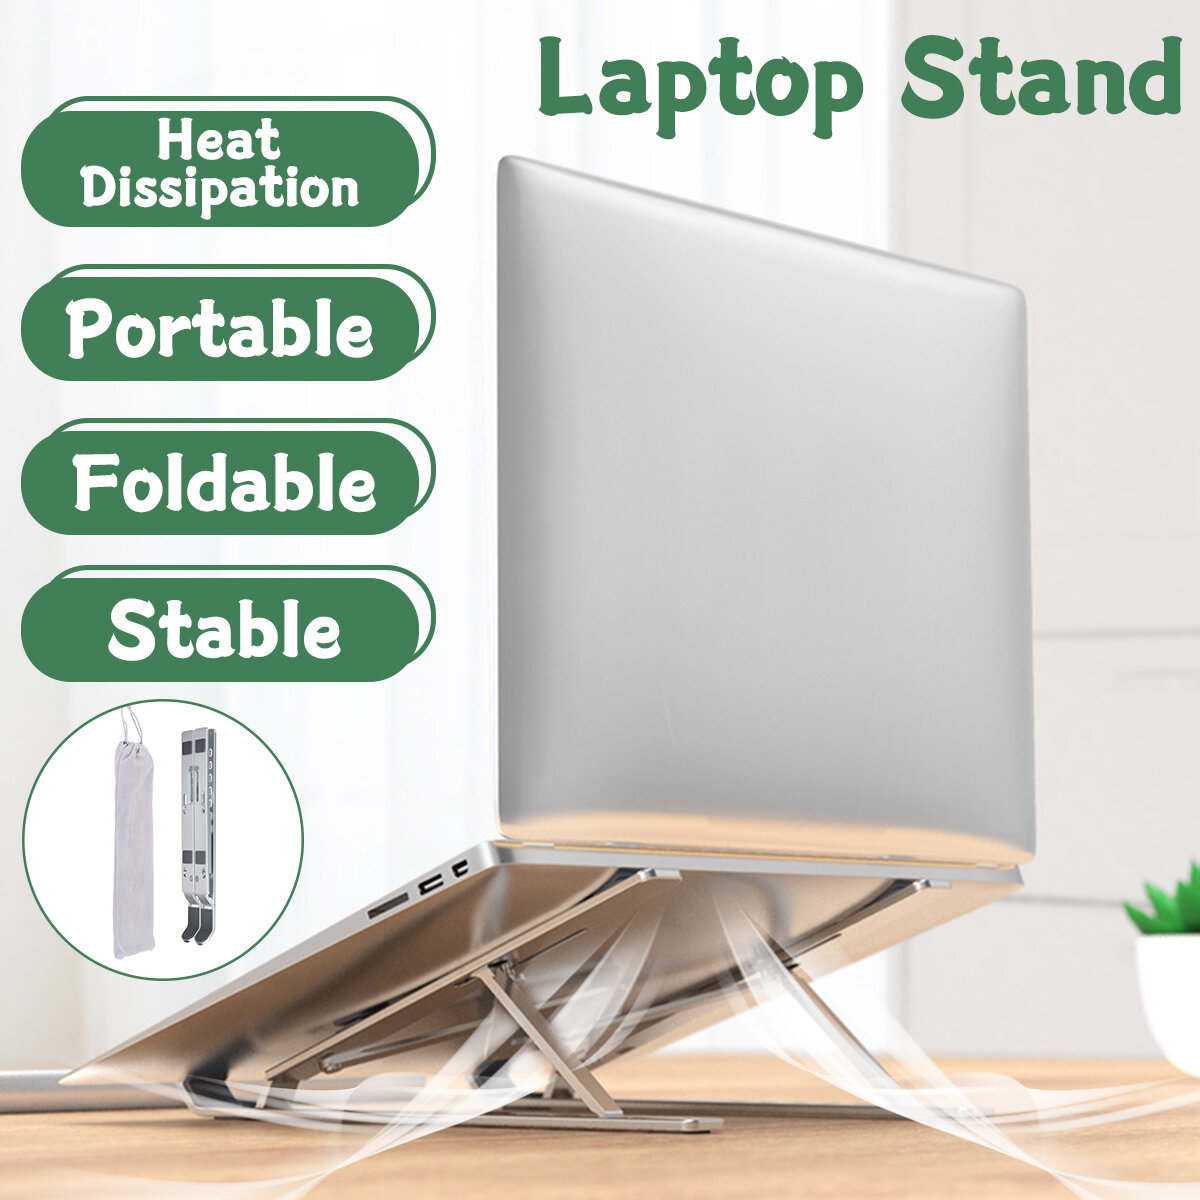 Adjustable Foldable Laptop Stand Non-slip Desktop Notebook Holder For Macbook